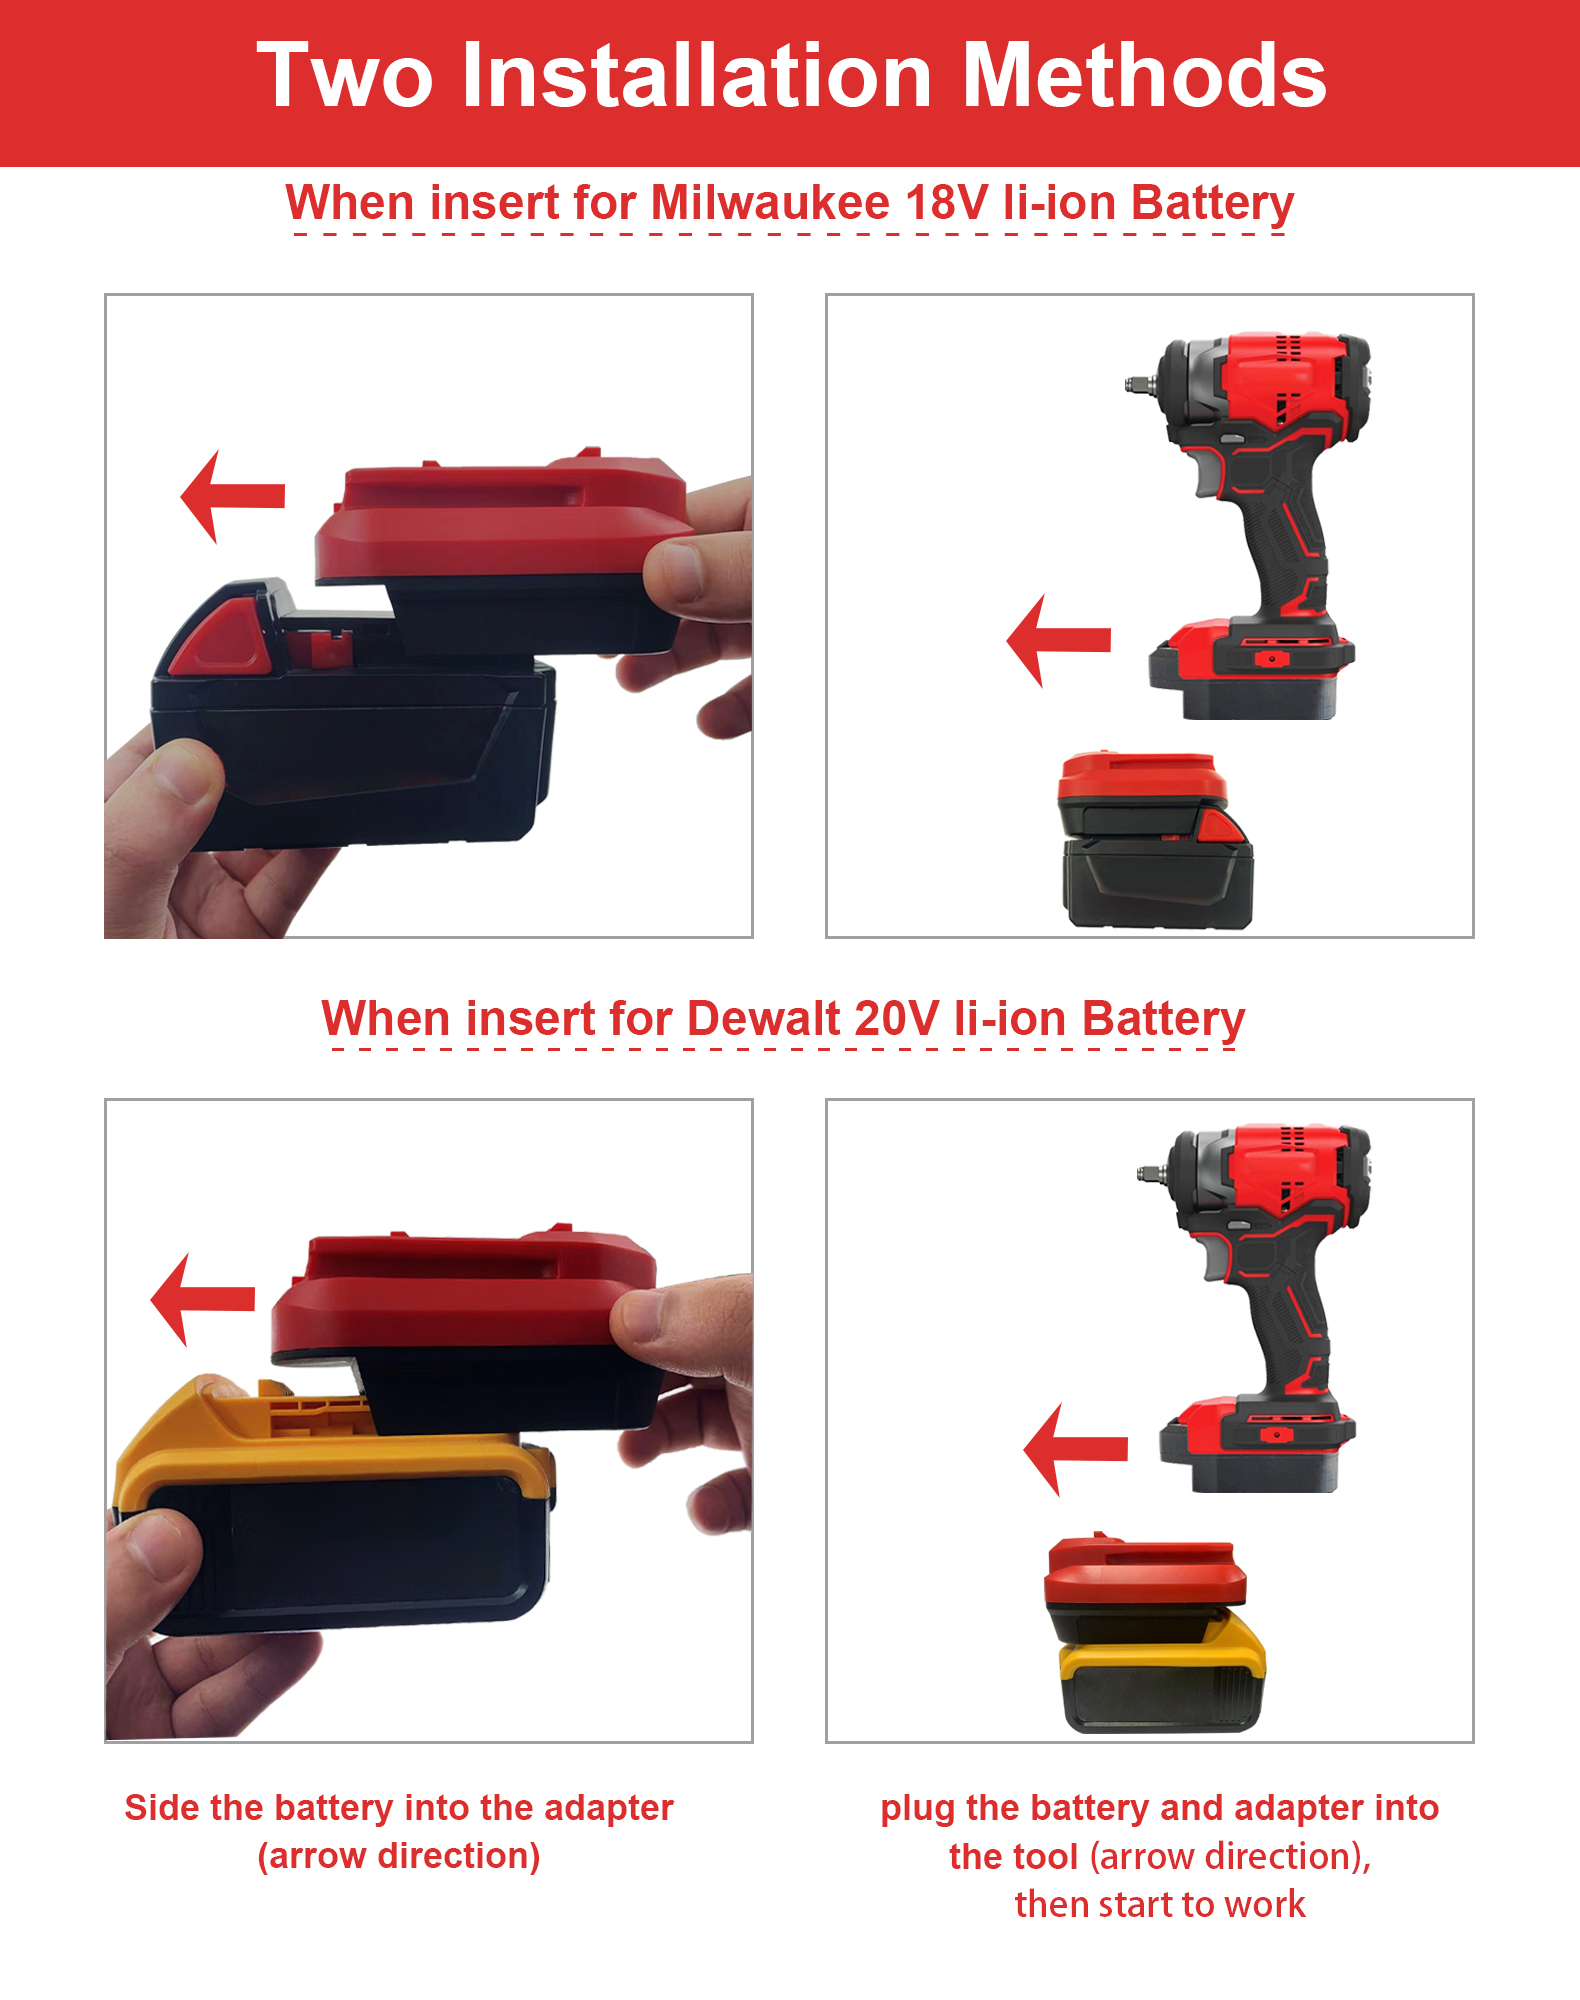 DeWalt және Milwaukee Lion аккумуляторына арналған батарея адаптері Craftsman 20V сымсыз құралдарға түрлендіру